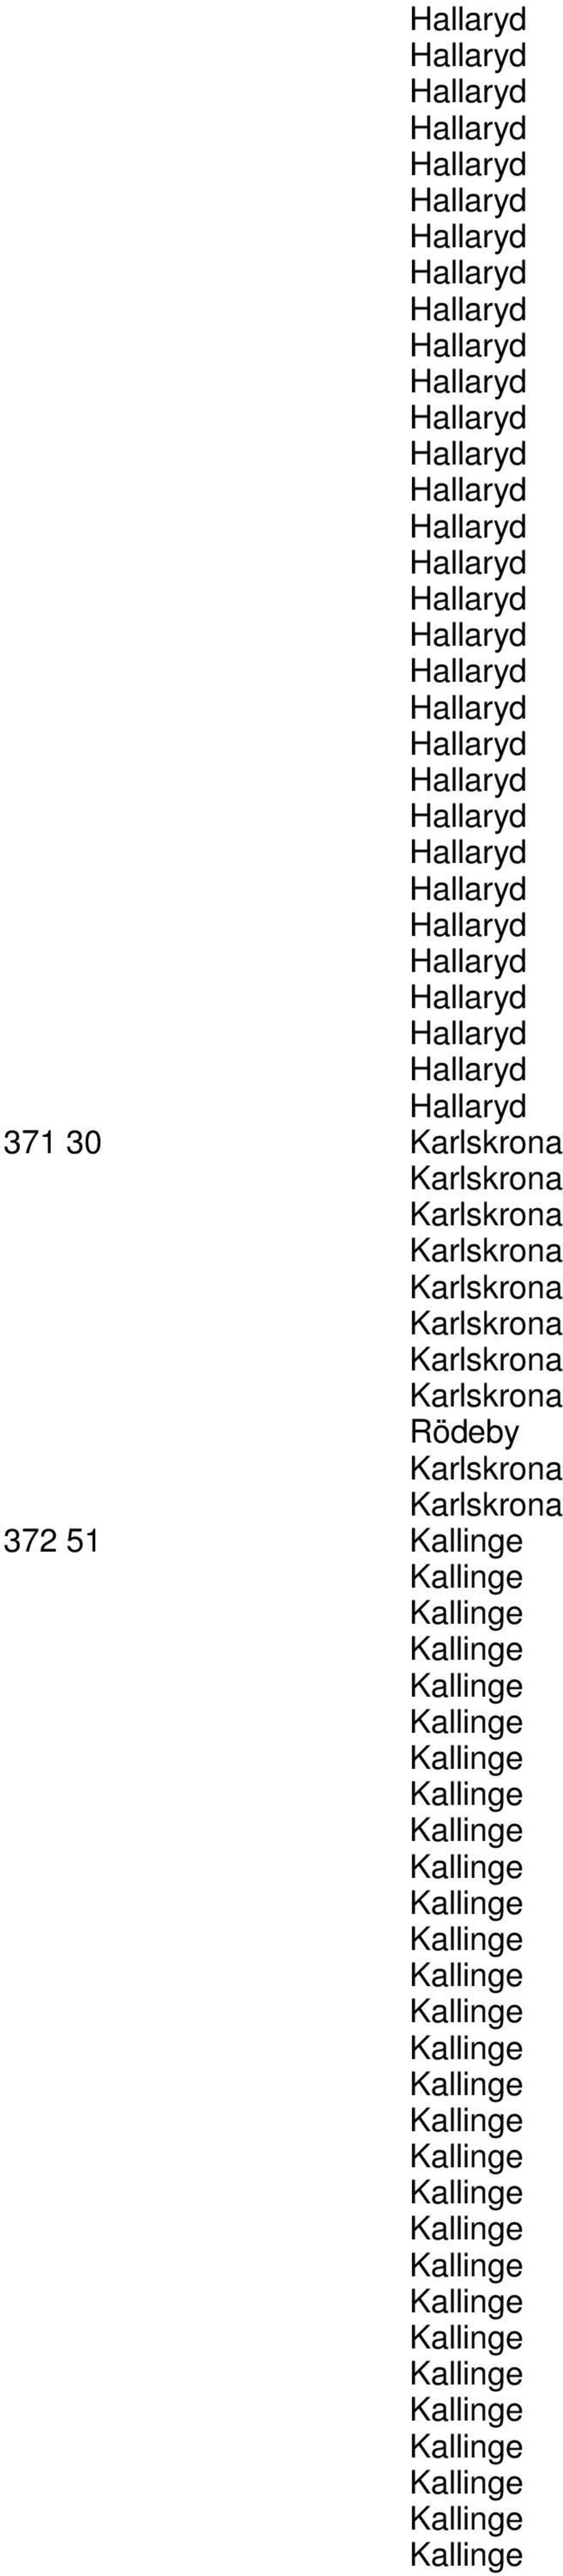 Karlskrona Karlskrona Karlskrona Karlskrona Rödeby Karlskrona Karlskrona 372 51 Kallinge Kallinge Kallinge Kallinge Kallinge Kallinge Kallinge Kallinge Kallinge